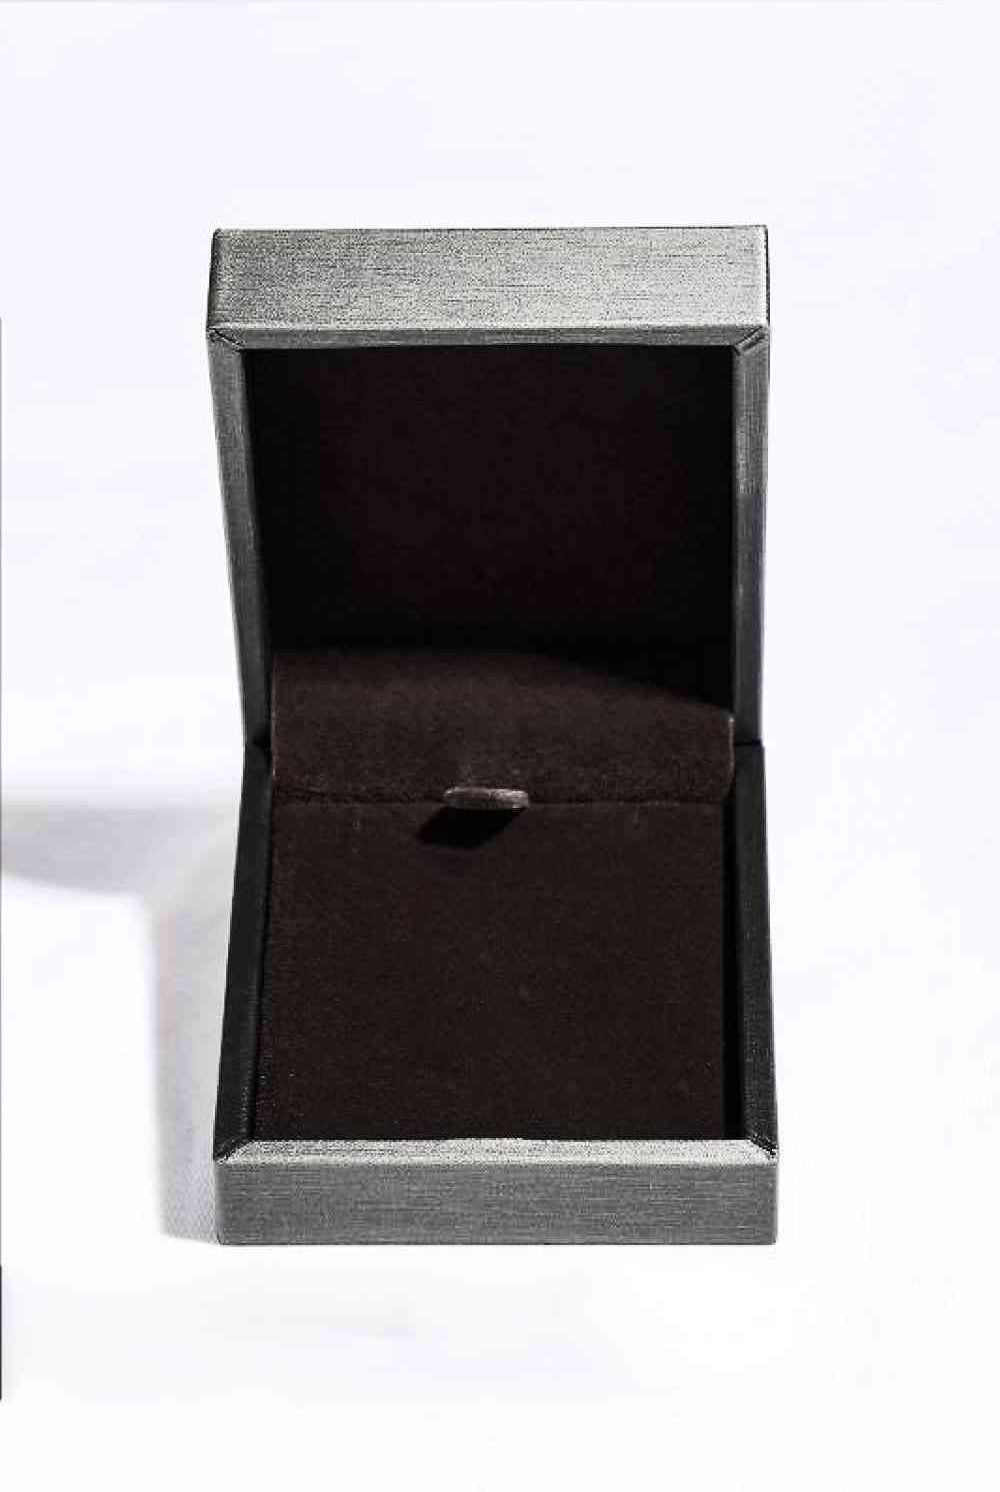 1 Carat Moissanite Key Pendant Necklace - GemThreads Boutique